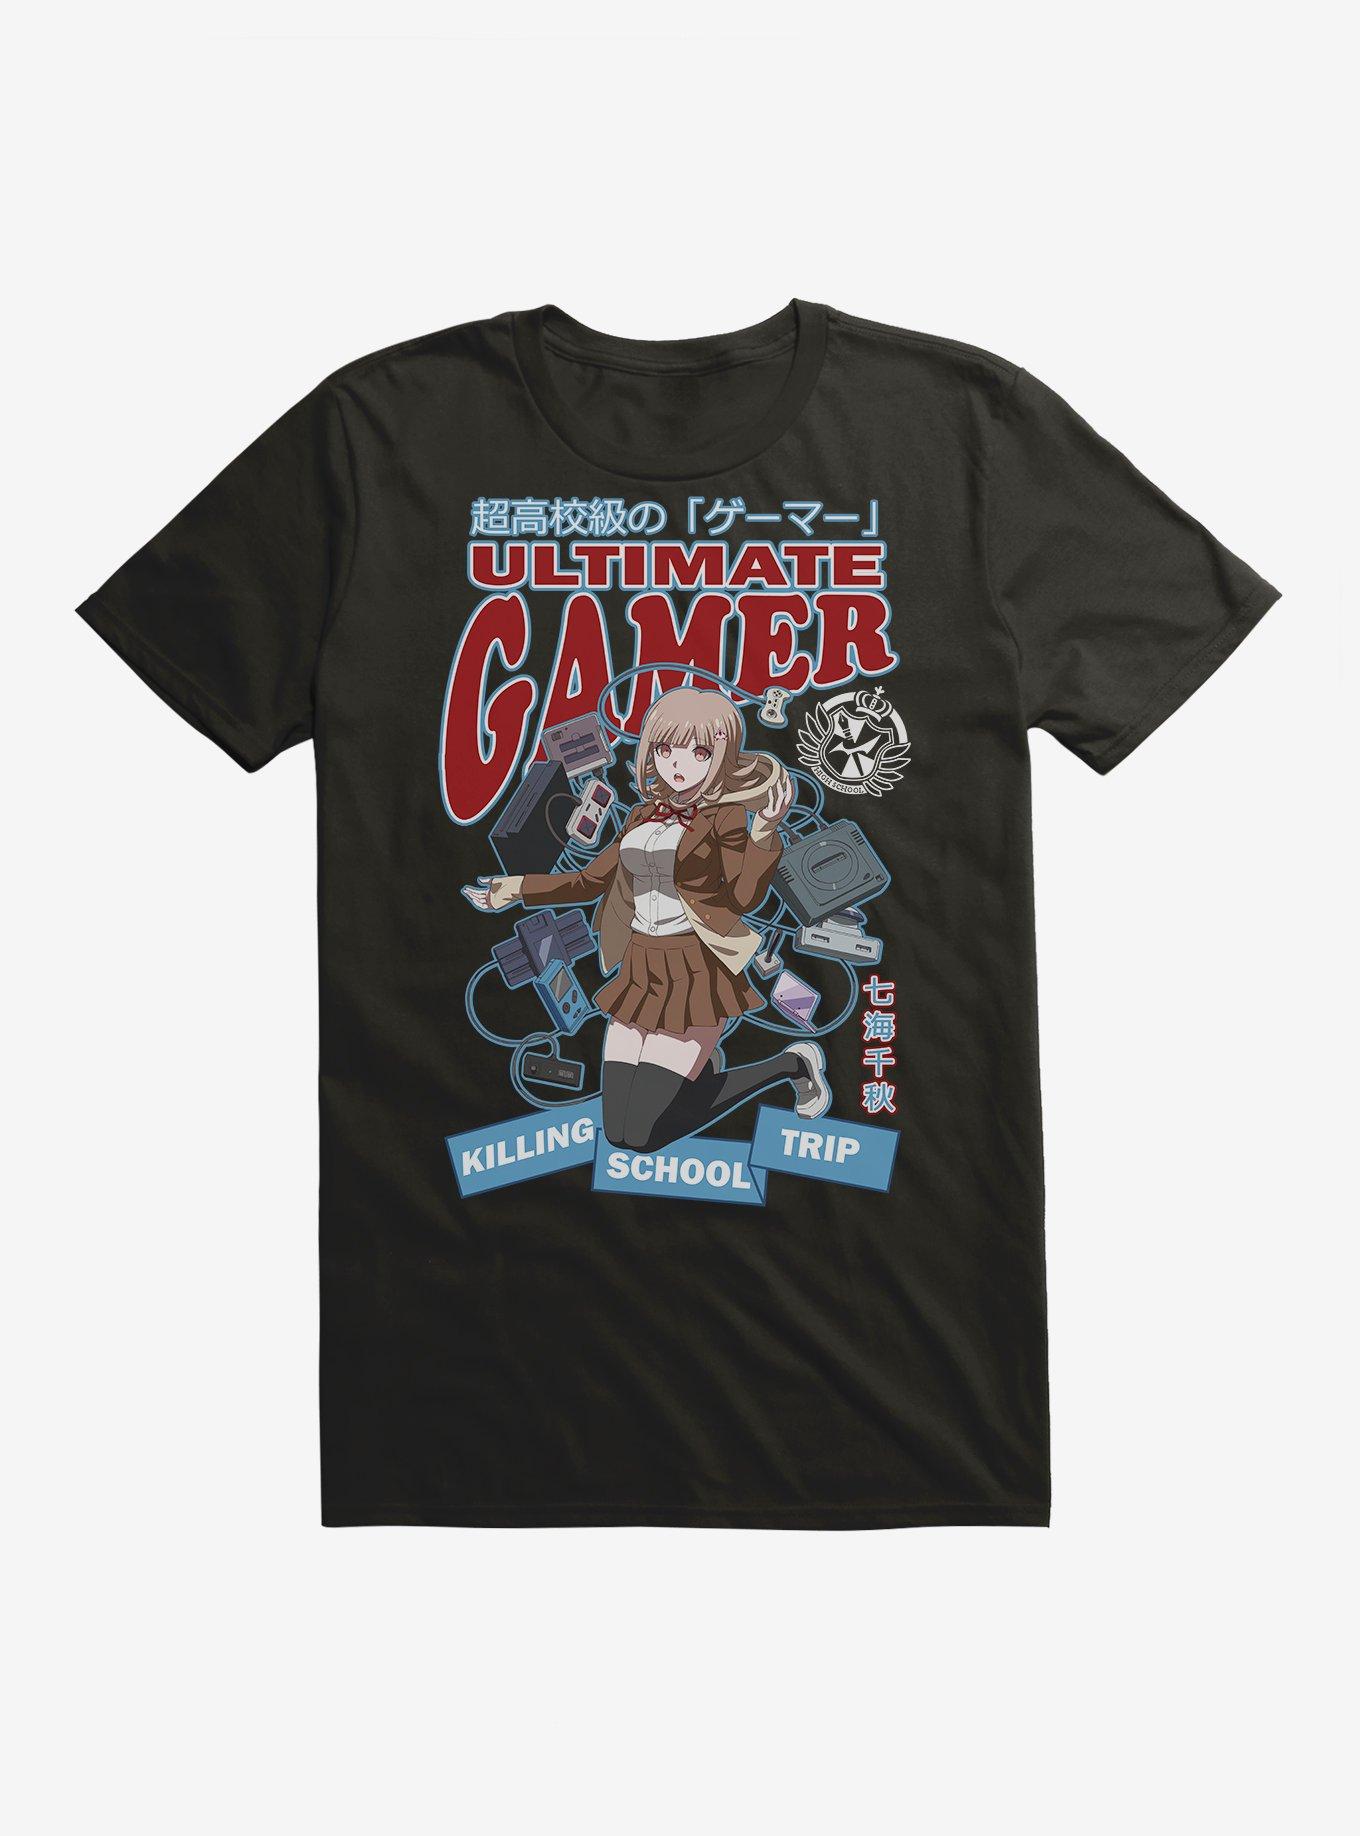 Danganronpa 3 Ultimate Gamer T-Shirt, BLACK, hi-res